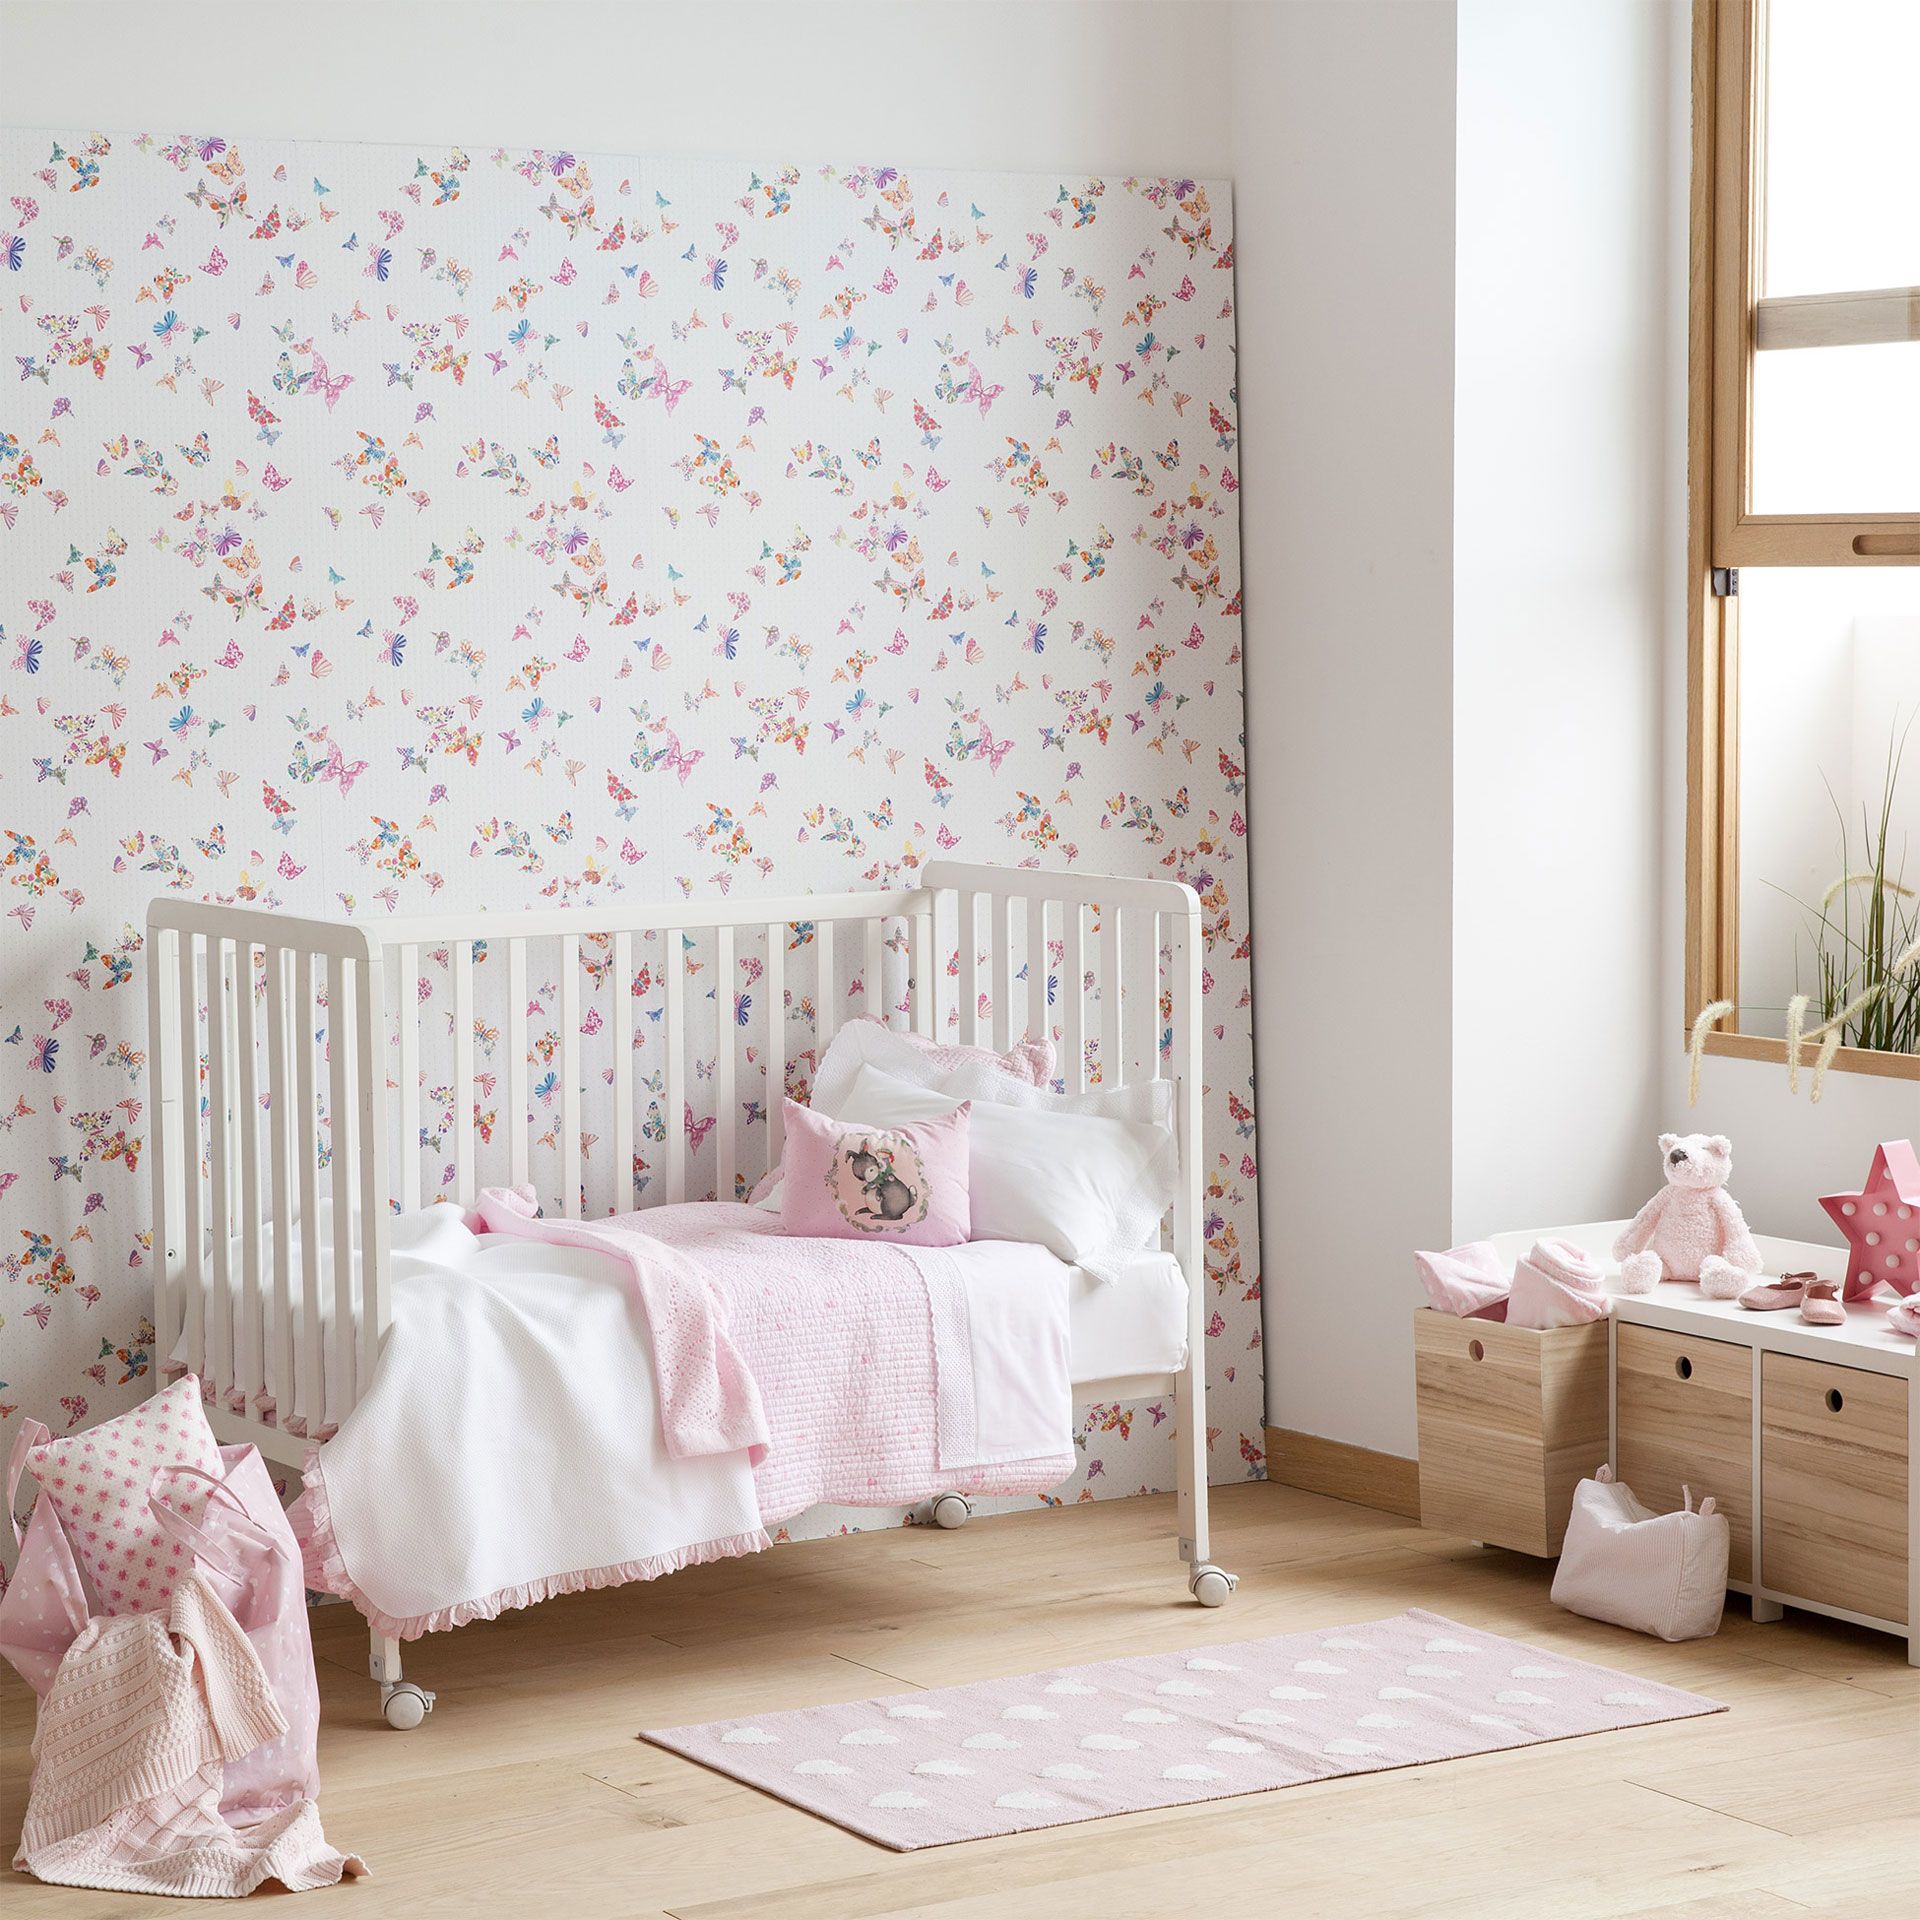 zara home wallpaper,meubles,produit,rose,chambre,mur